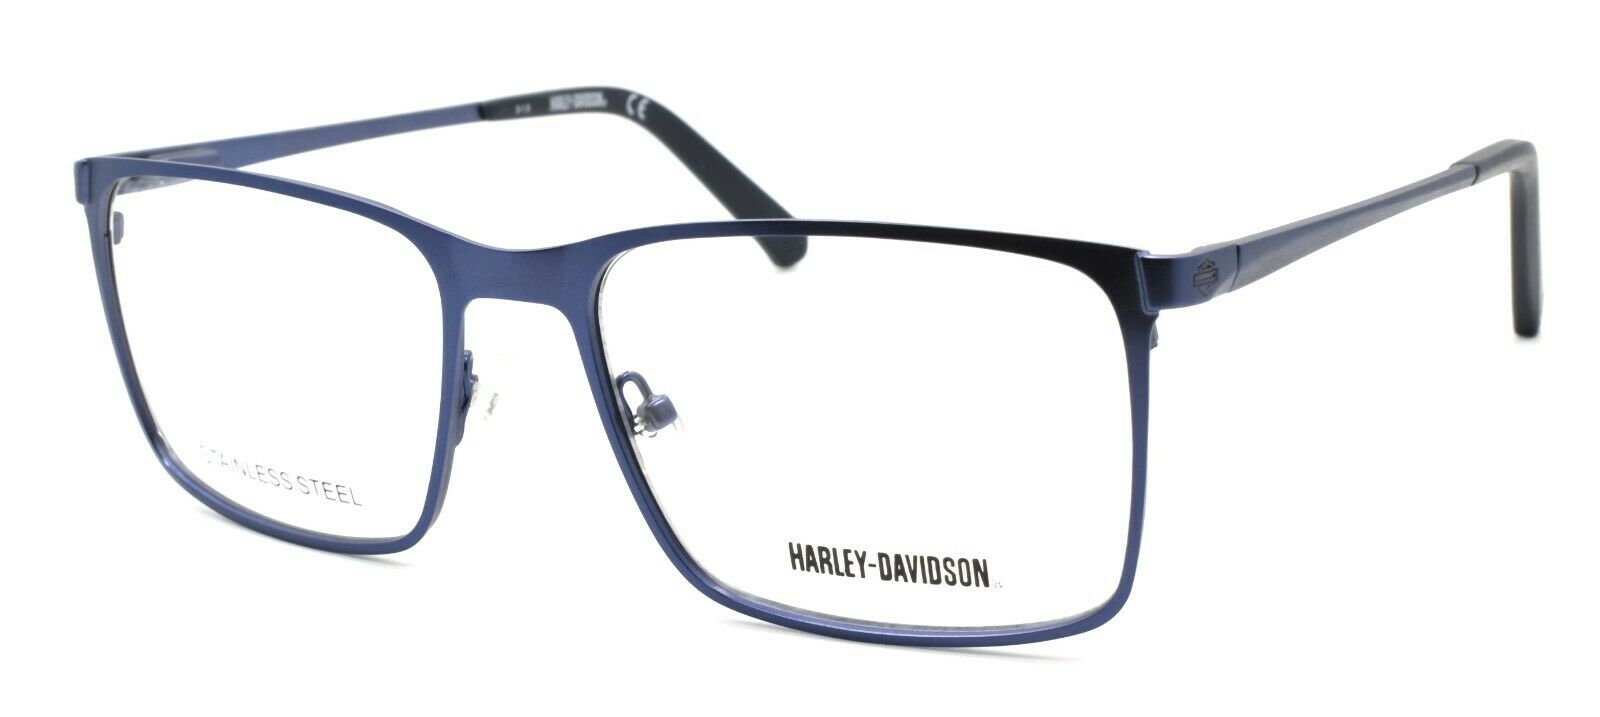 1-Harley Davidson HD0777 091 Men's Eyeglasses Frames 56-17-145 Matte Blue + Case-664689964819-IKSpecs